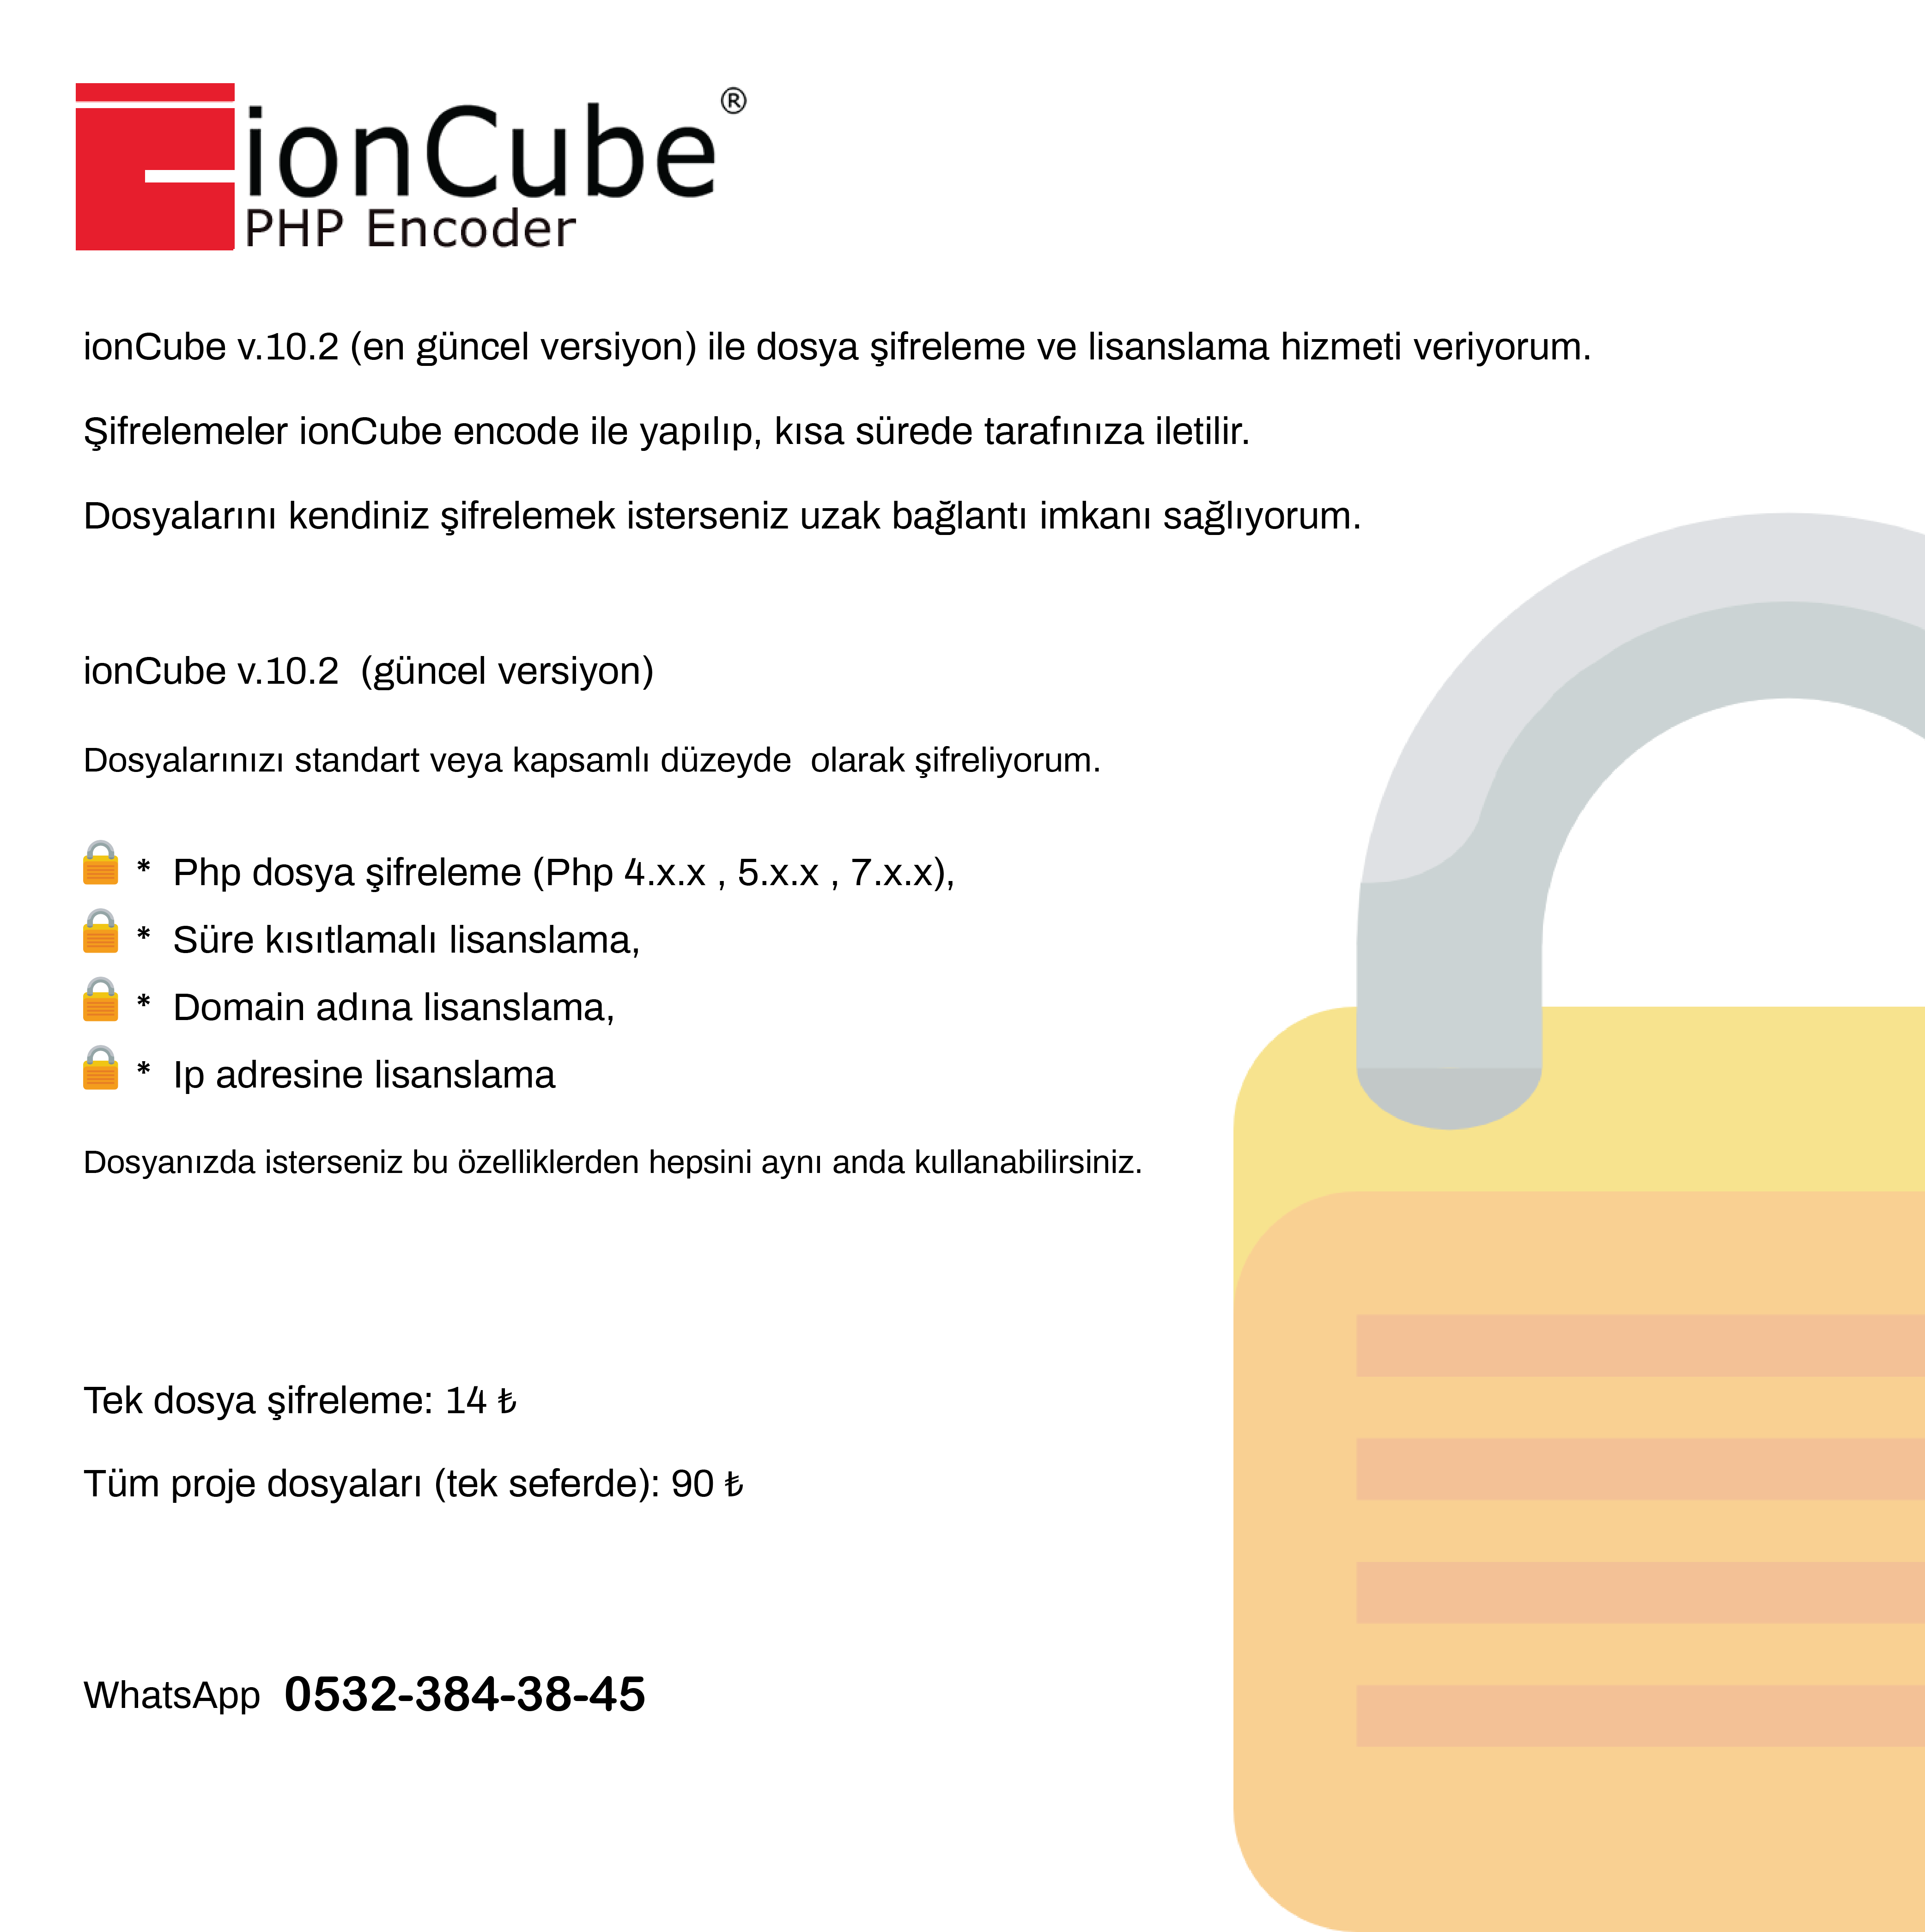 ★ ionCube v.10.2 ile Dosya Şifreleme (Encode) ve Lisanslama Hizmeti Verilir